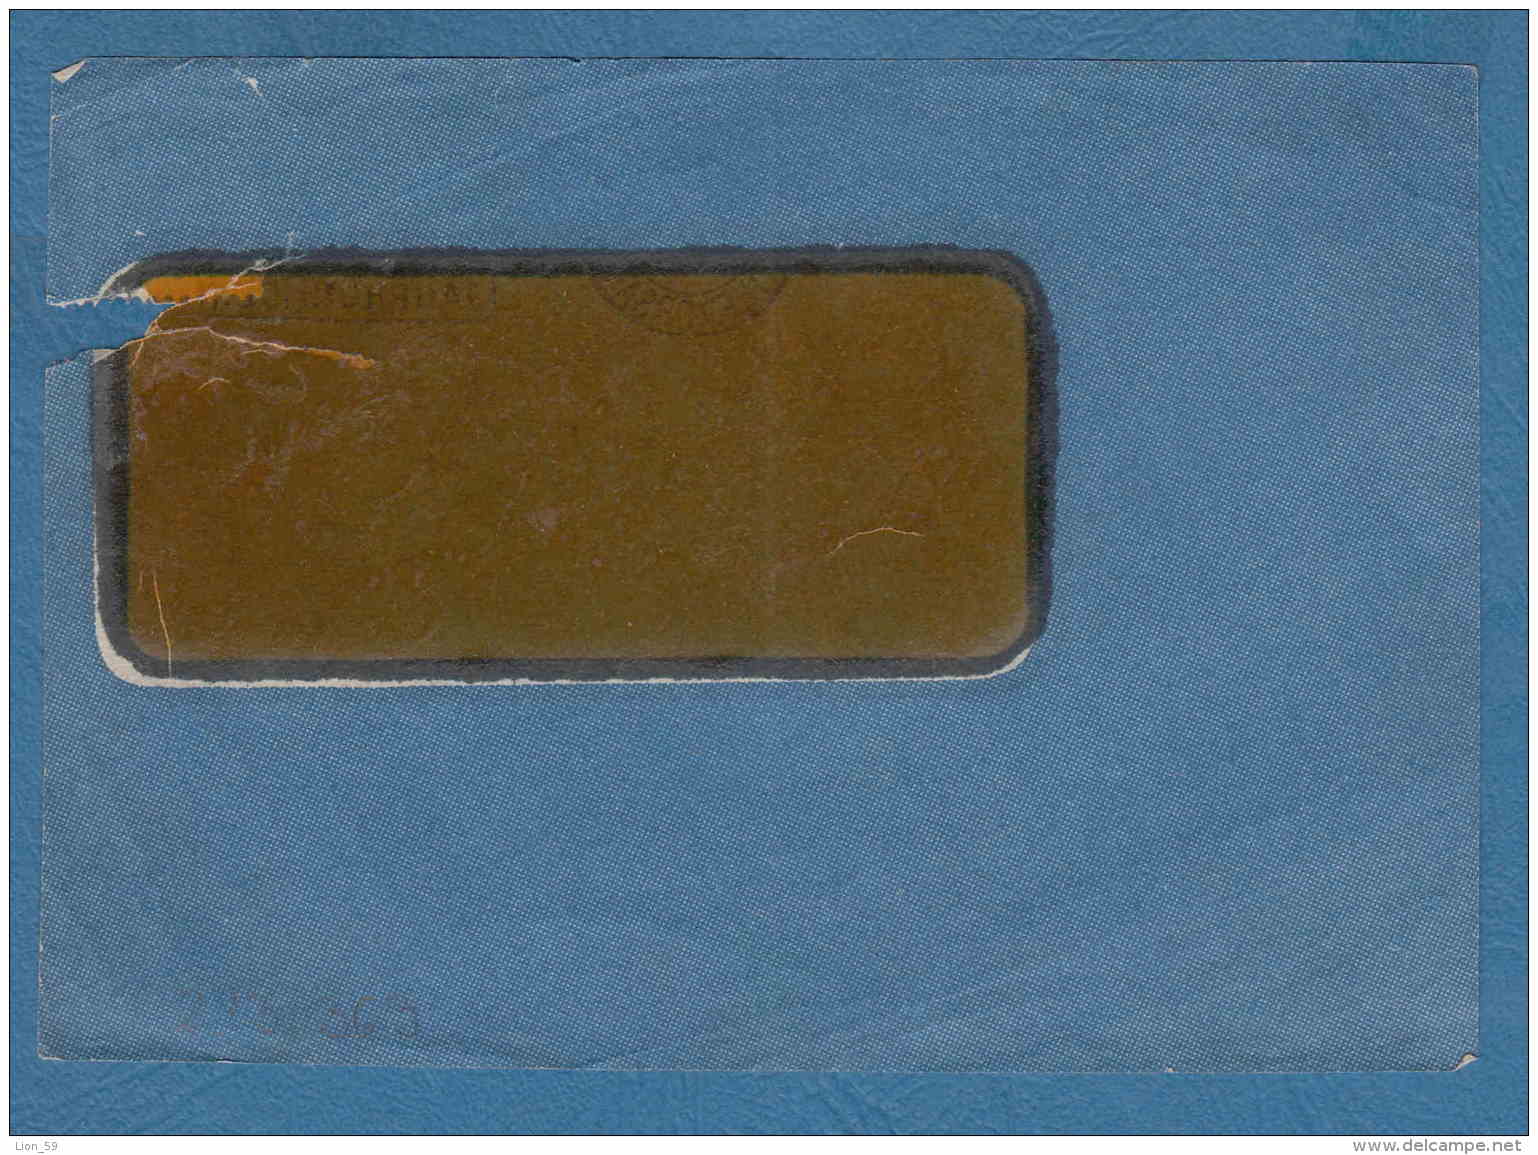 213363 / 1924 - 40 C. - CREDIT SUISSE ZURICH - Perfin Perfores Perforiert Gezähnt Perforati Switzerland Suisse Schweiz - Gezähnt (perforiert)